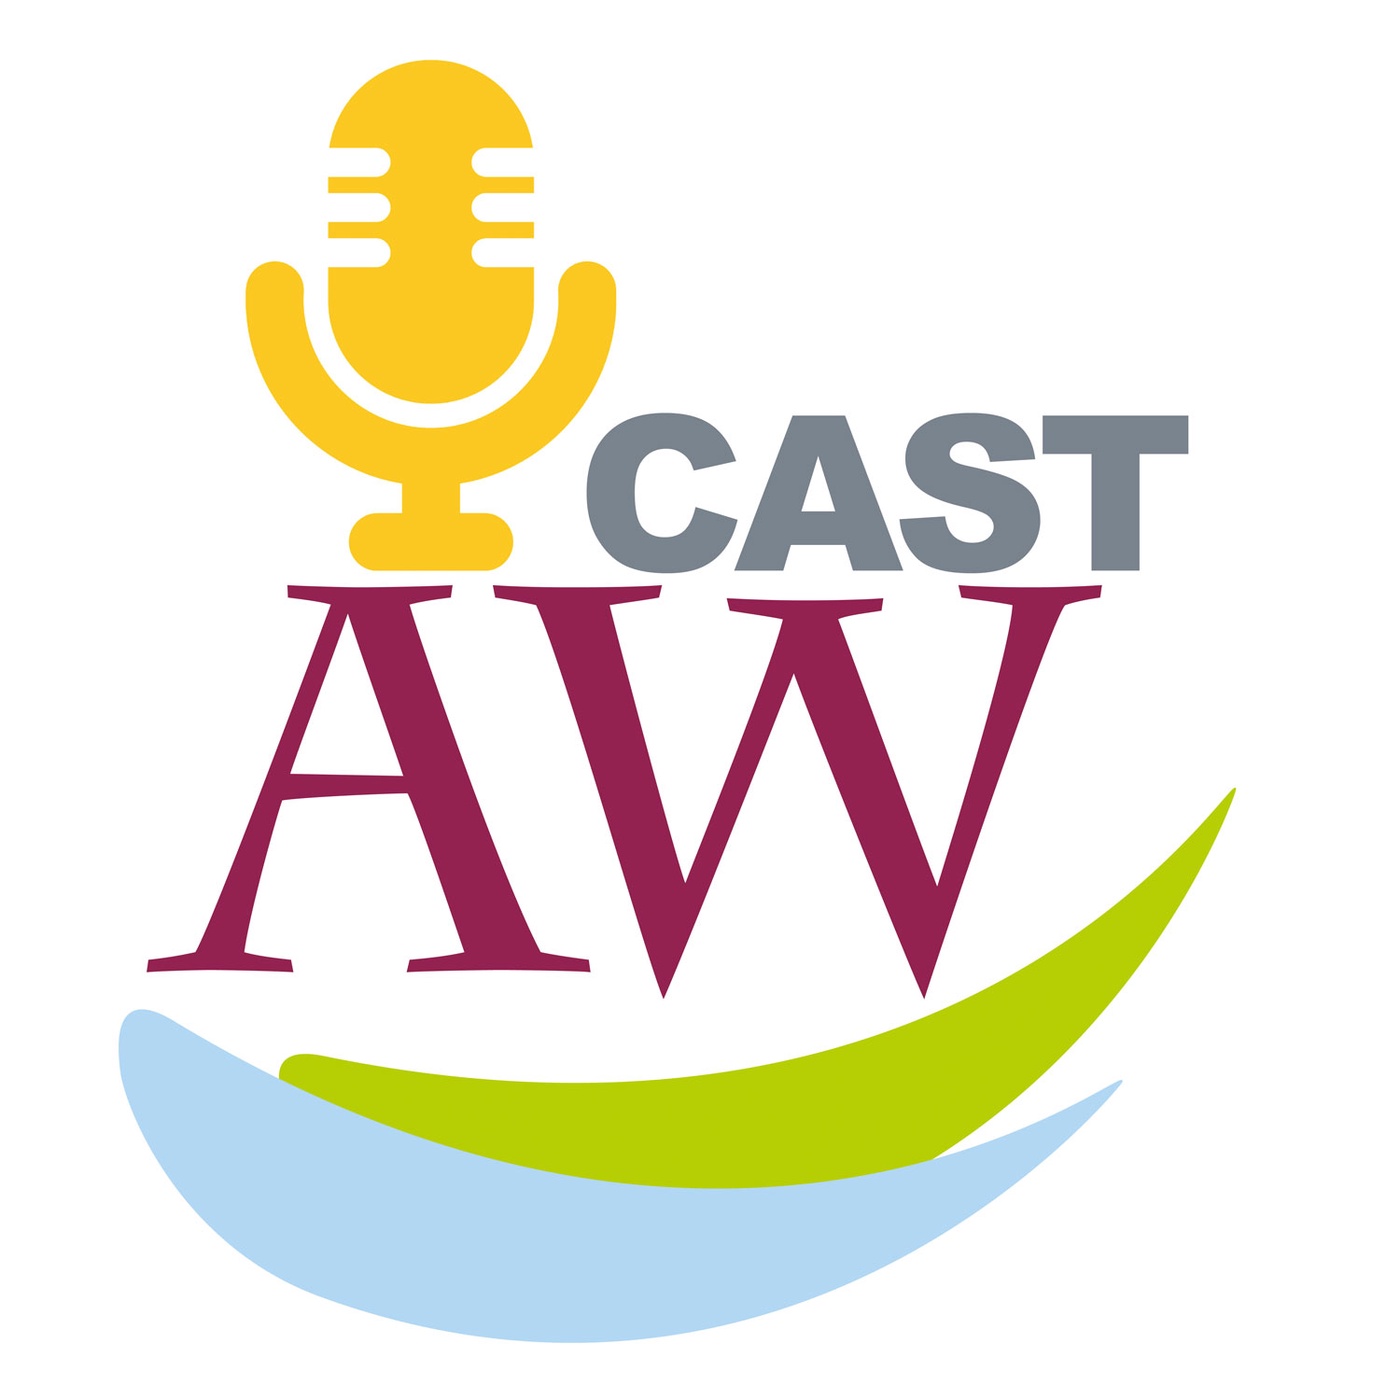 AW-Cast